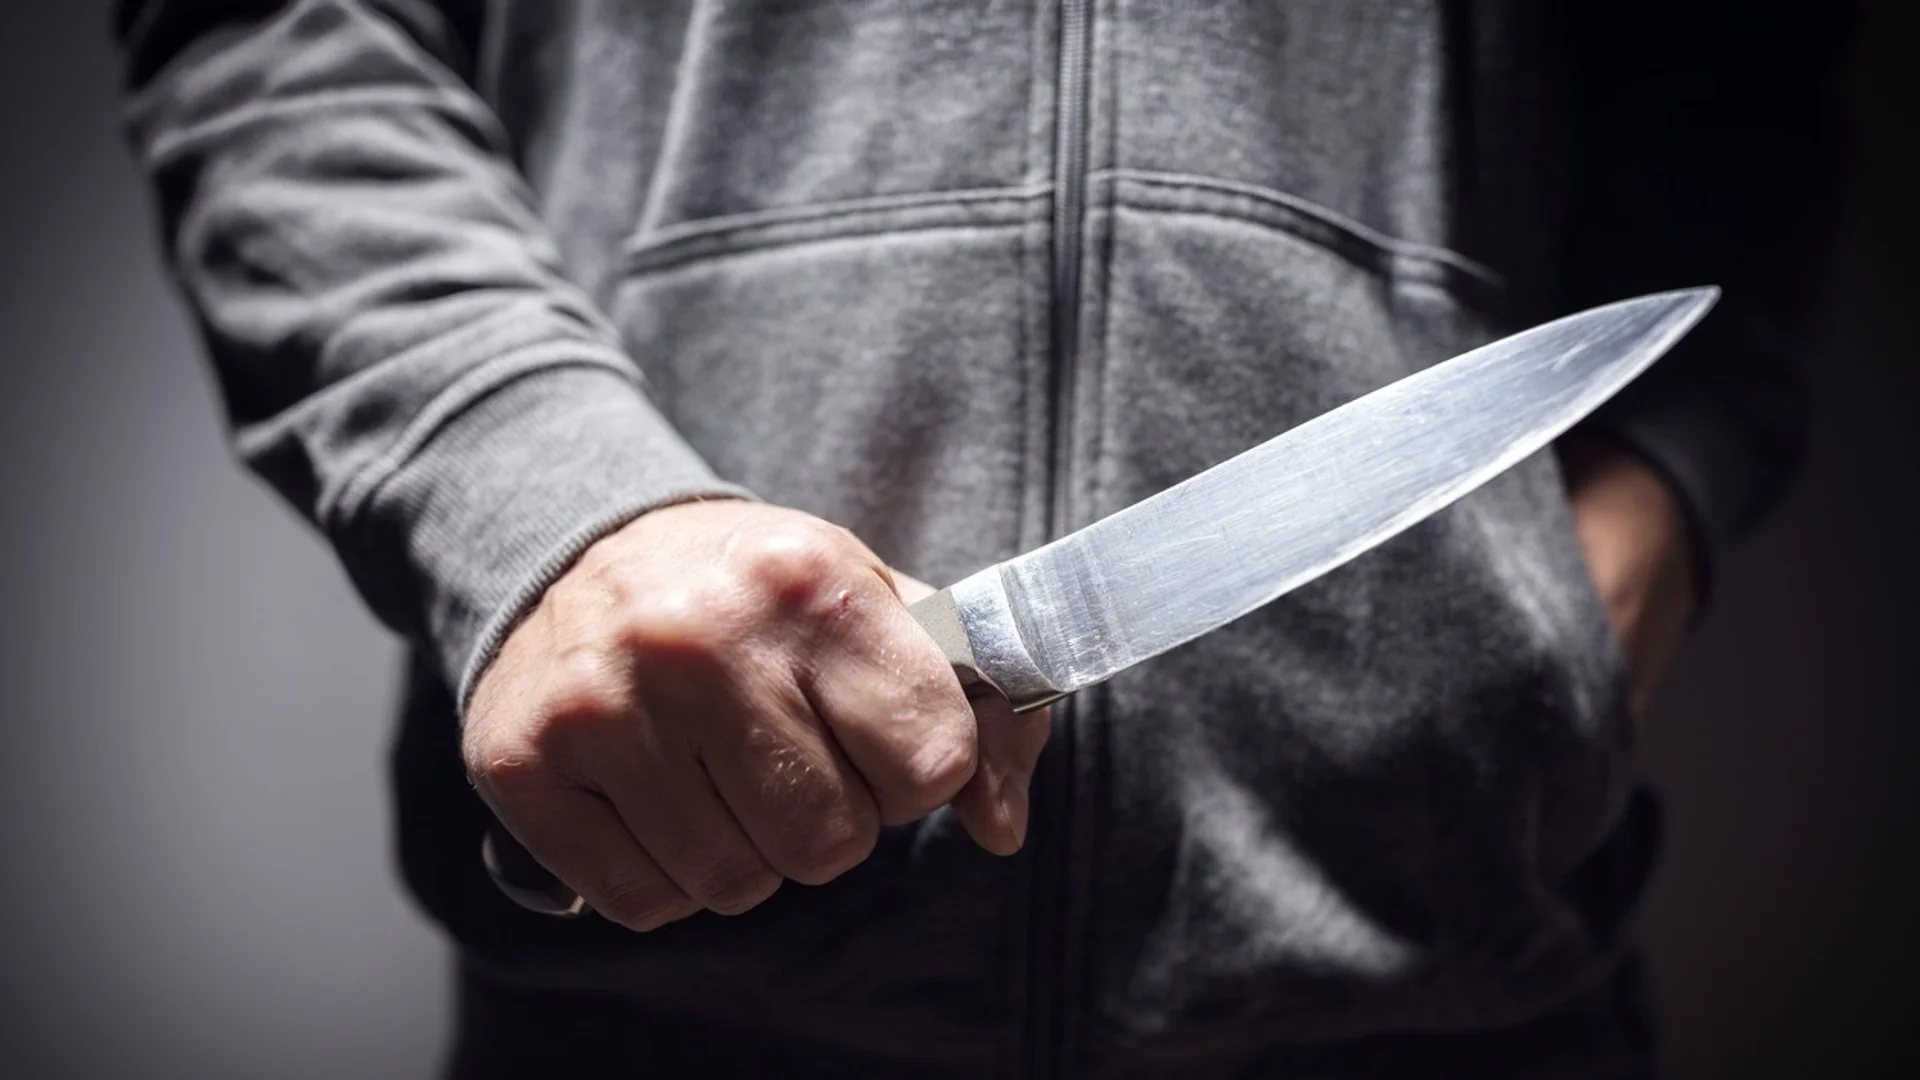 Наръгаха с нож в корема губернатора на Мурманска област в Русия (СНИМКИ)